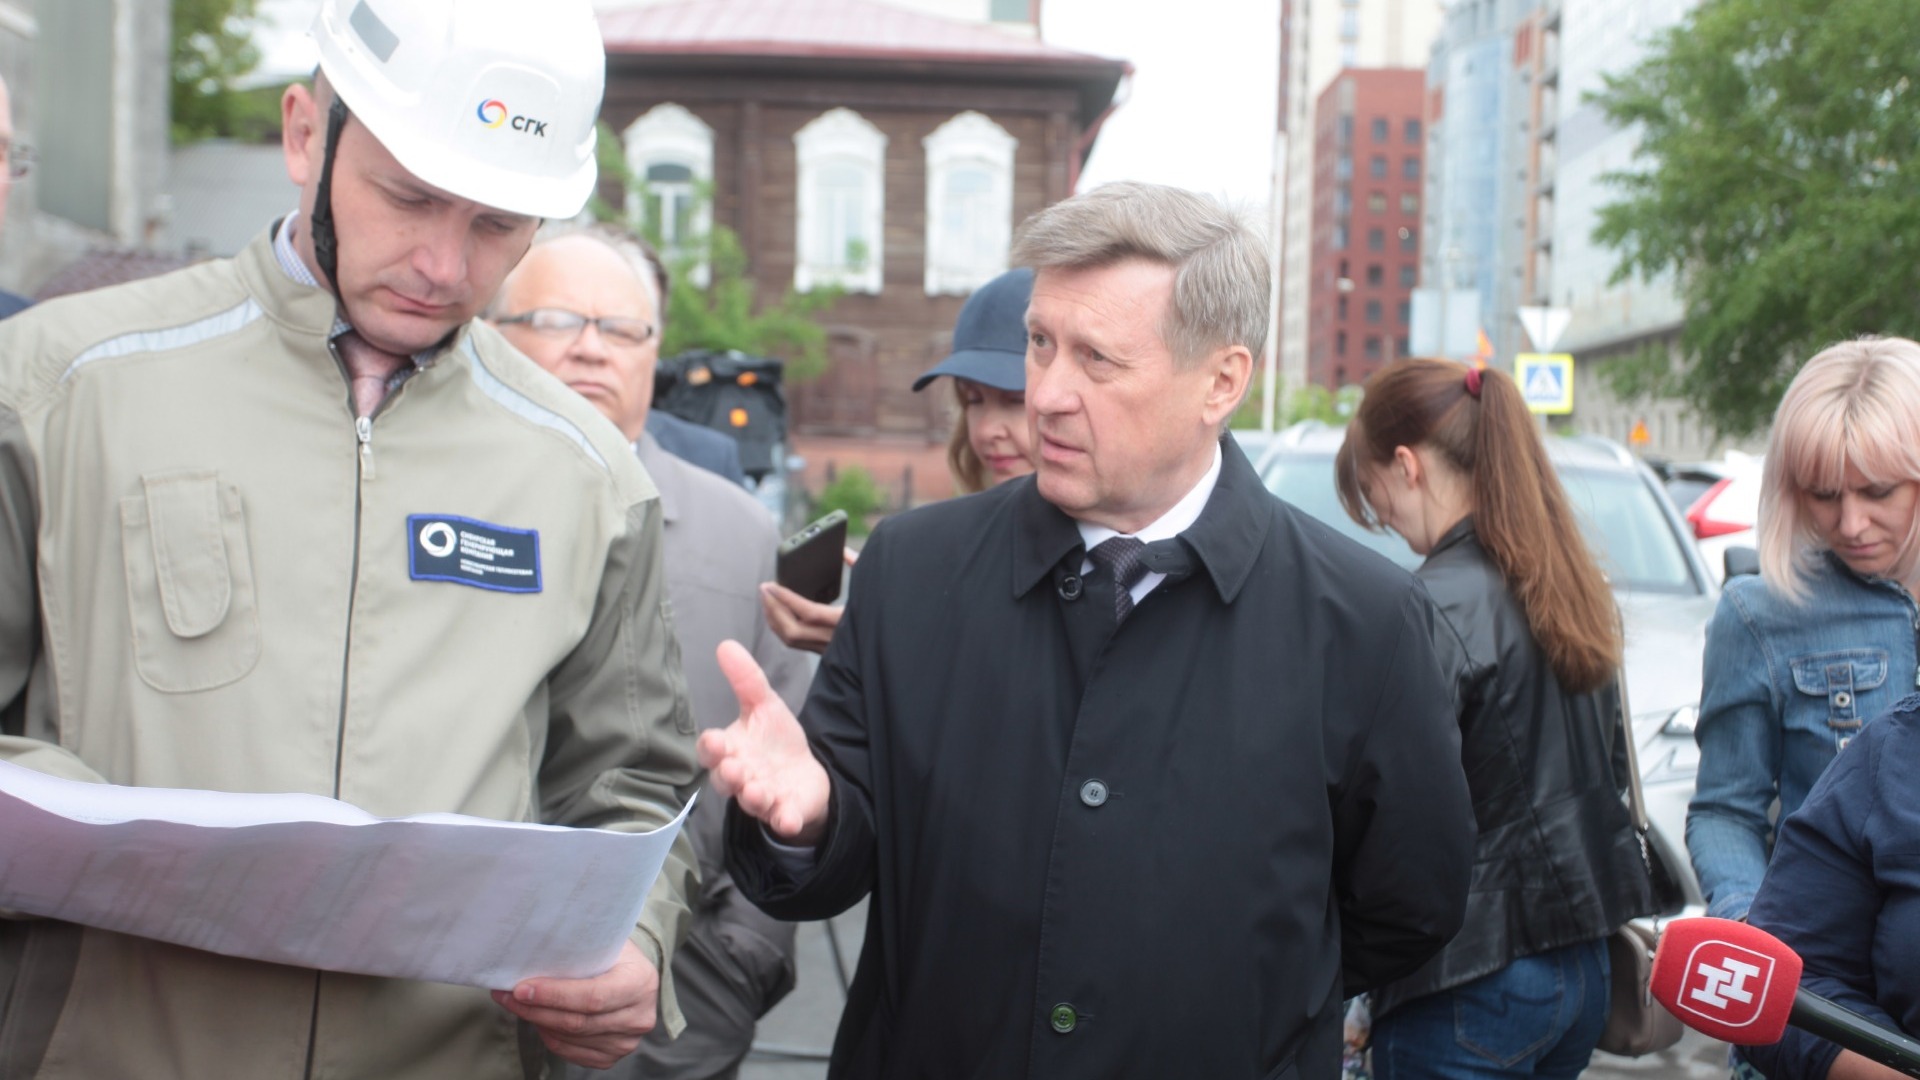 Анатолий Локоть проинспектировал как идут работу по нацпроекту "БКД" в Центральном районе Новосибирска